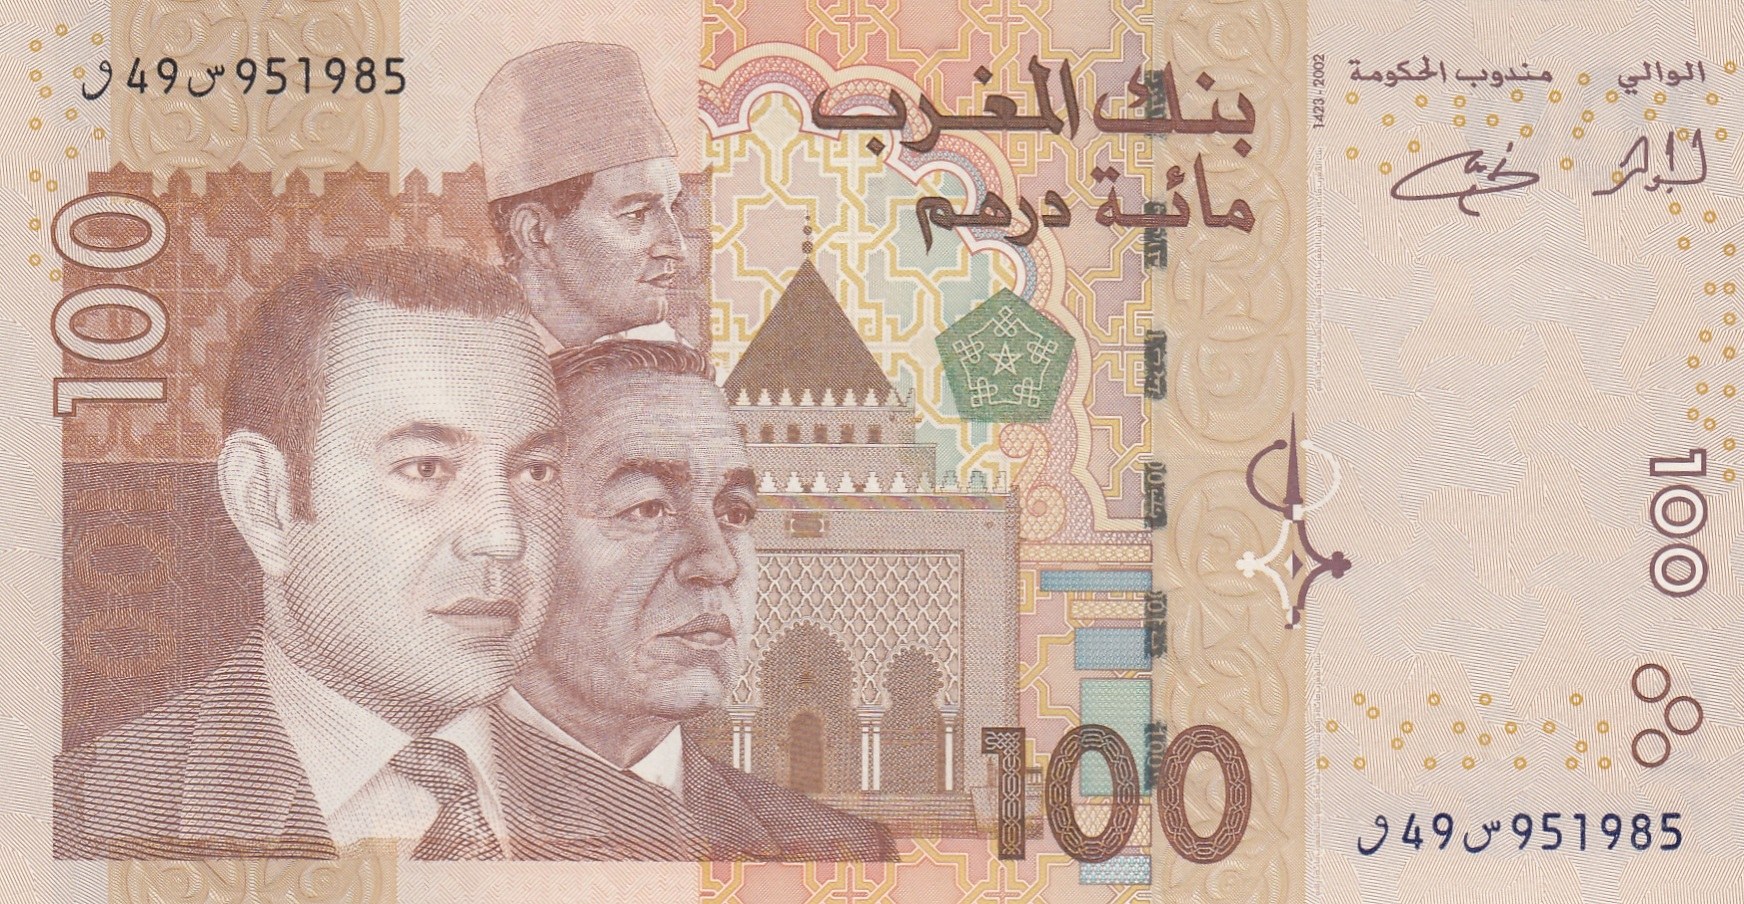 14000 дирхам. 100 Дирхам Марокко банкнота. Марокканские купюры. Валюта Марокко. Марокканские дирхамы.